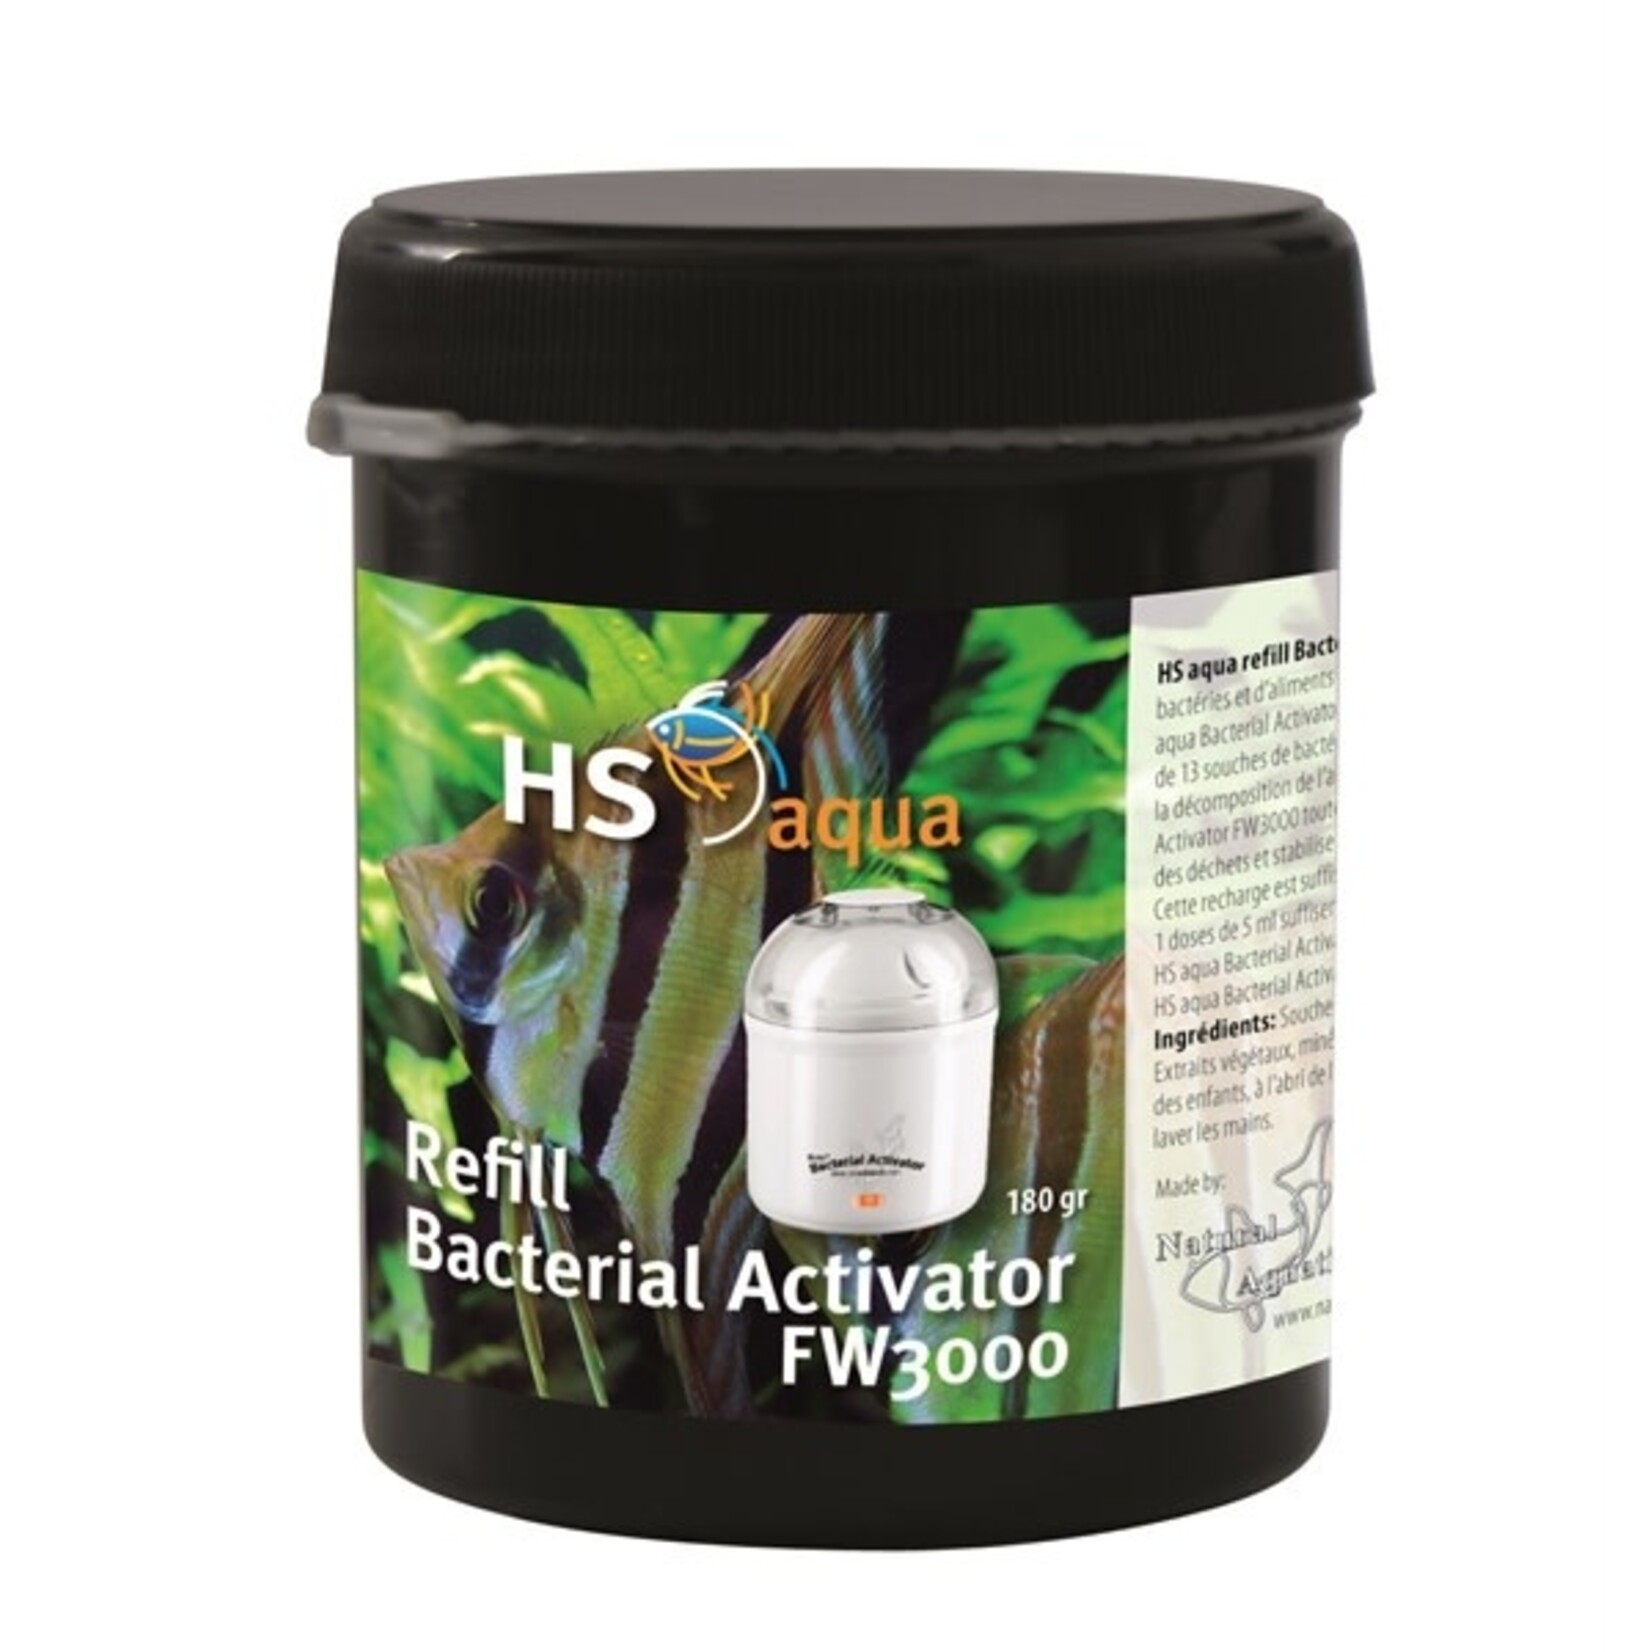 HS Aqua Refill bacterial activator fw 3000